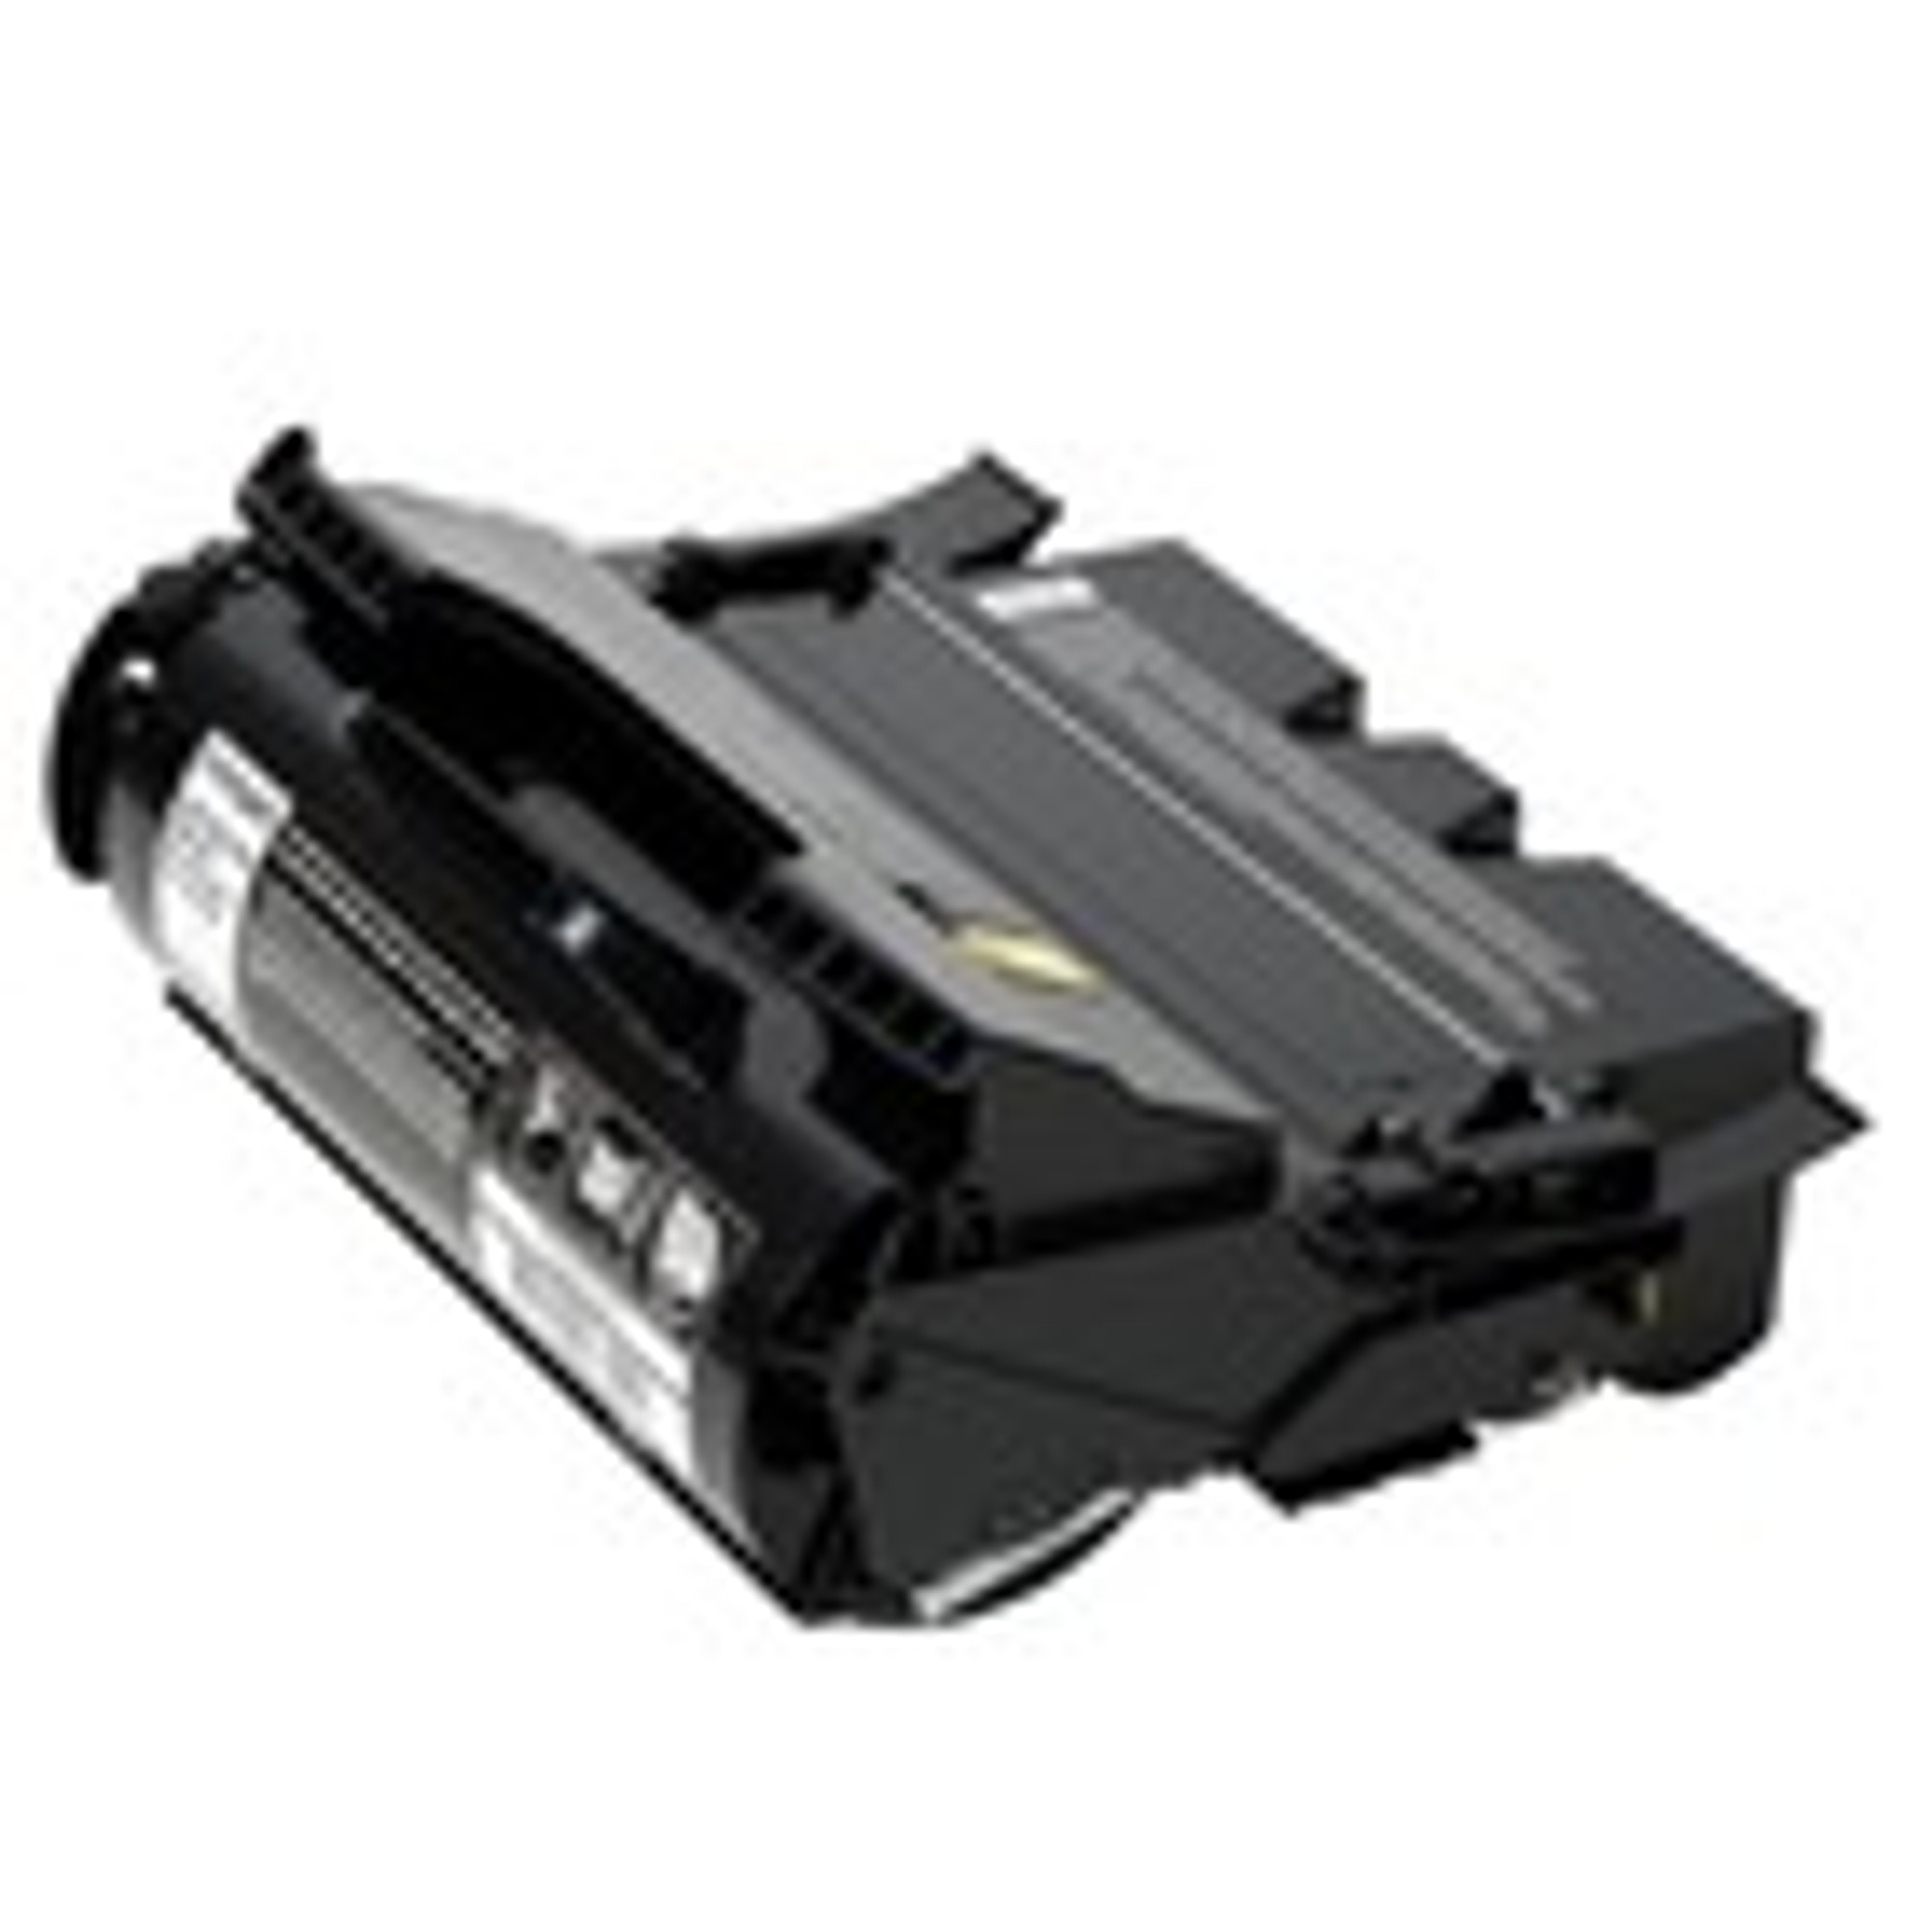 Regular Toner for Lexmark T640, T642 & T644 Printer